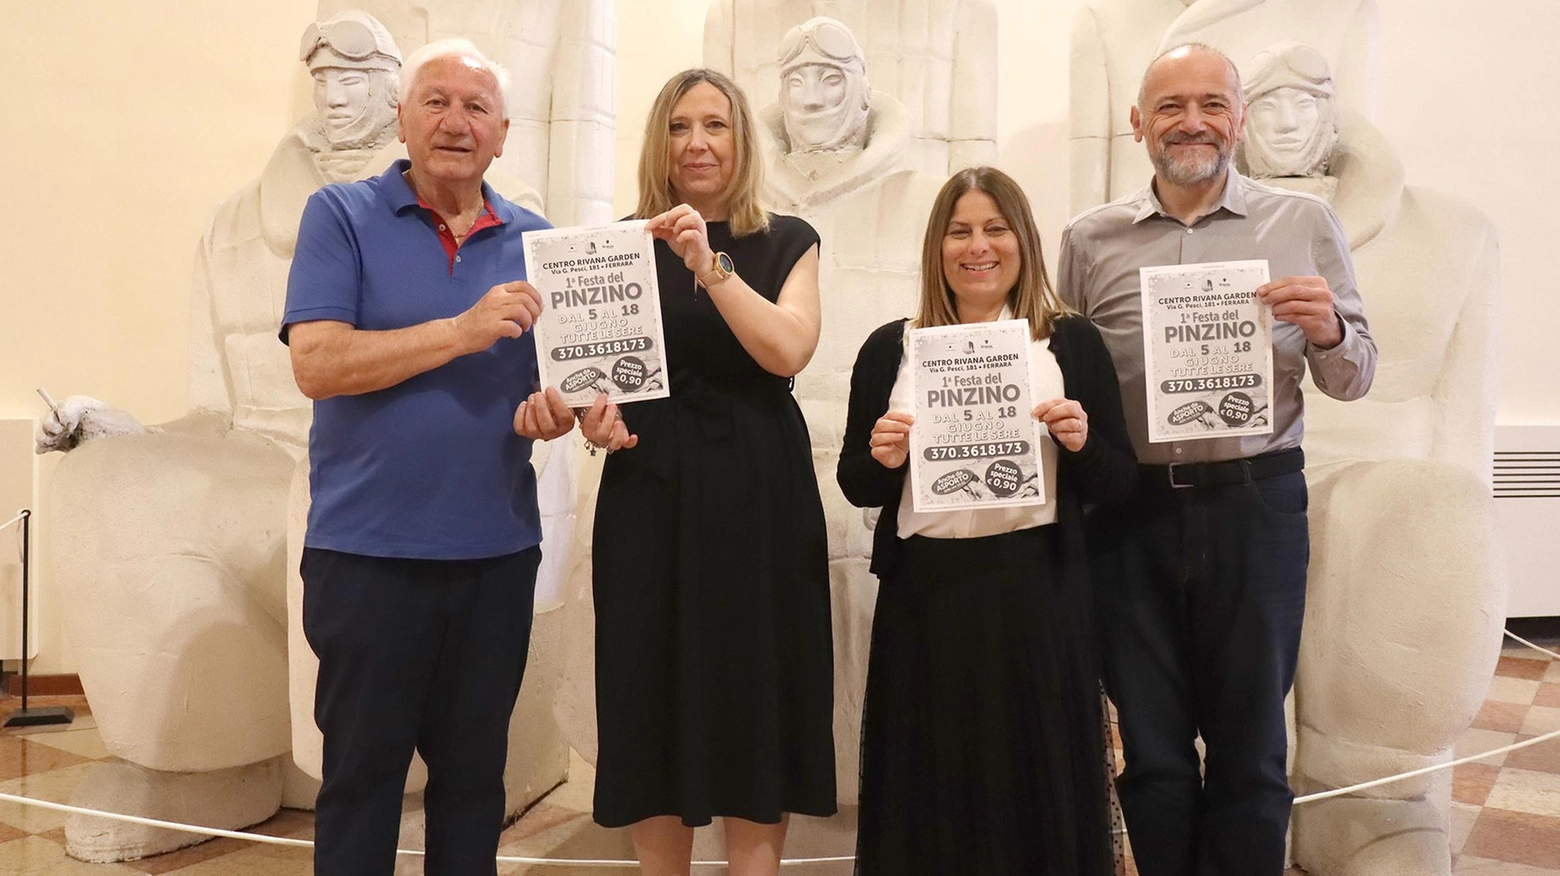 Cucina e solidarietà alla Rivana  Da lunedì protagonisti i pinzini